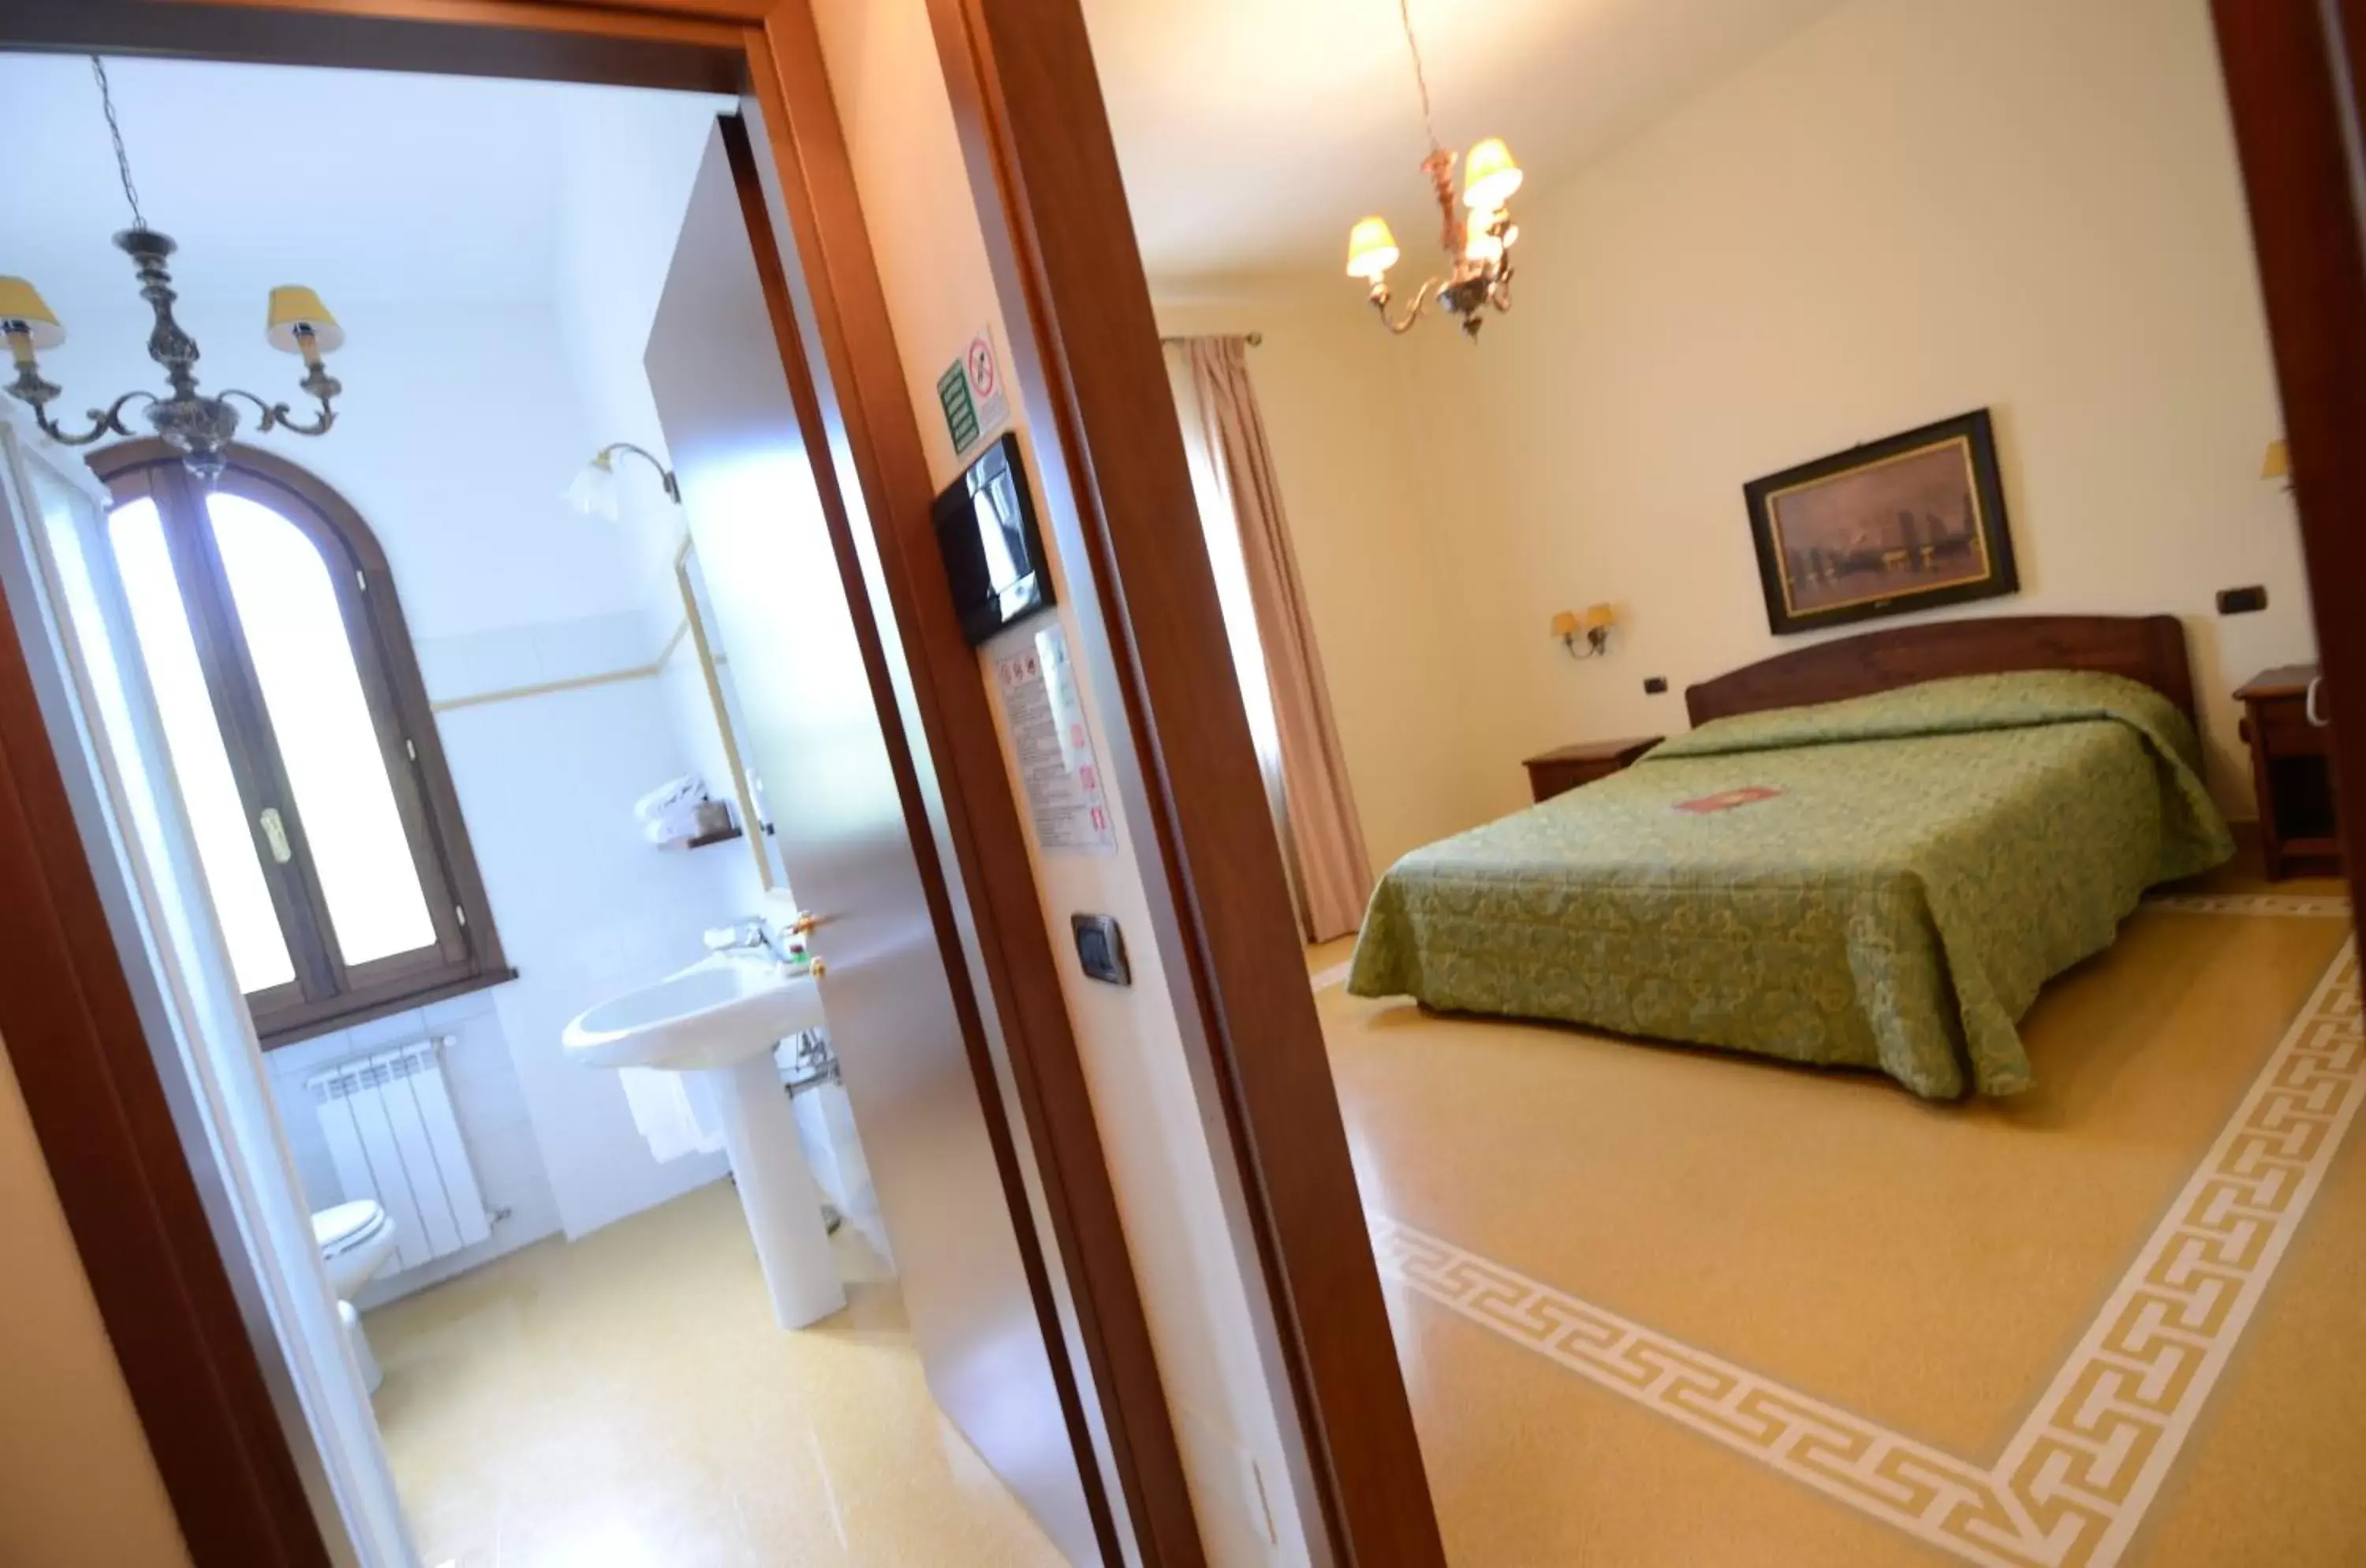 Photo of the whole room, Bathroom in Poggio Degli Olivi